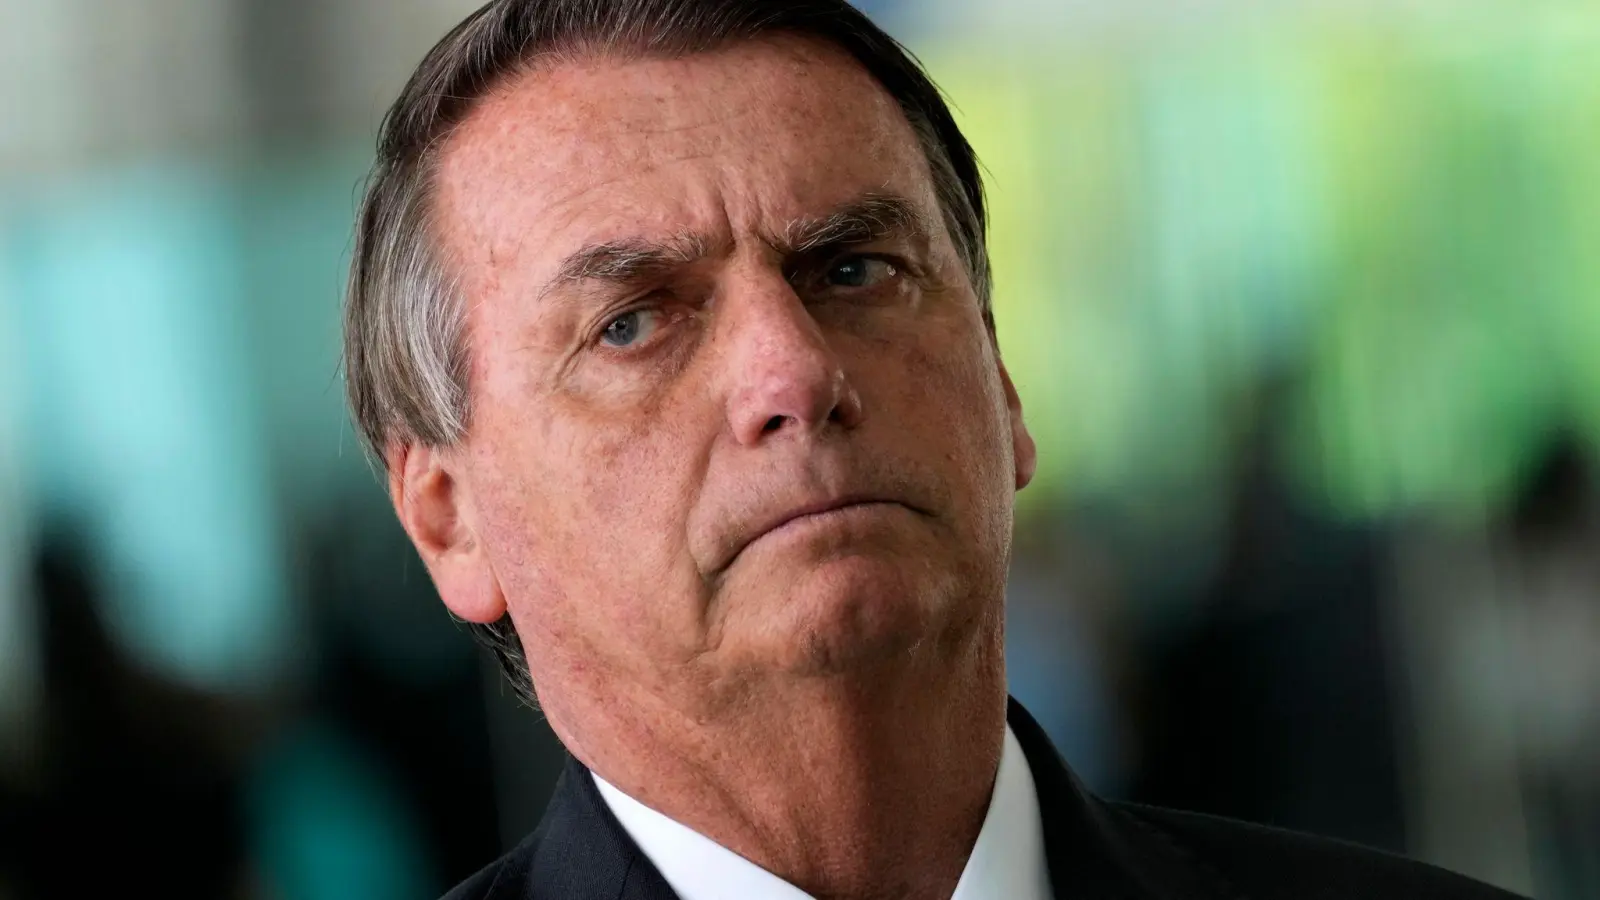 Jair Bolsonaro, Präsident von Brasilien, soll gefälschte Impfausweise genutzt haben. (Foto: Eraldo Peres/AP/dpa)